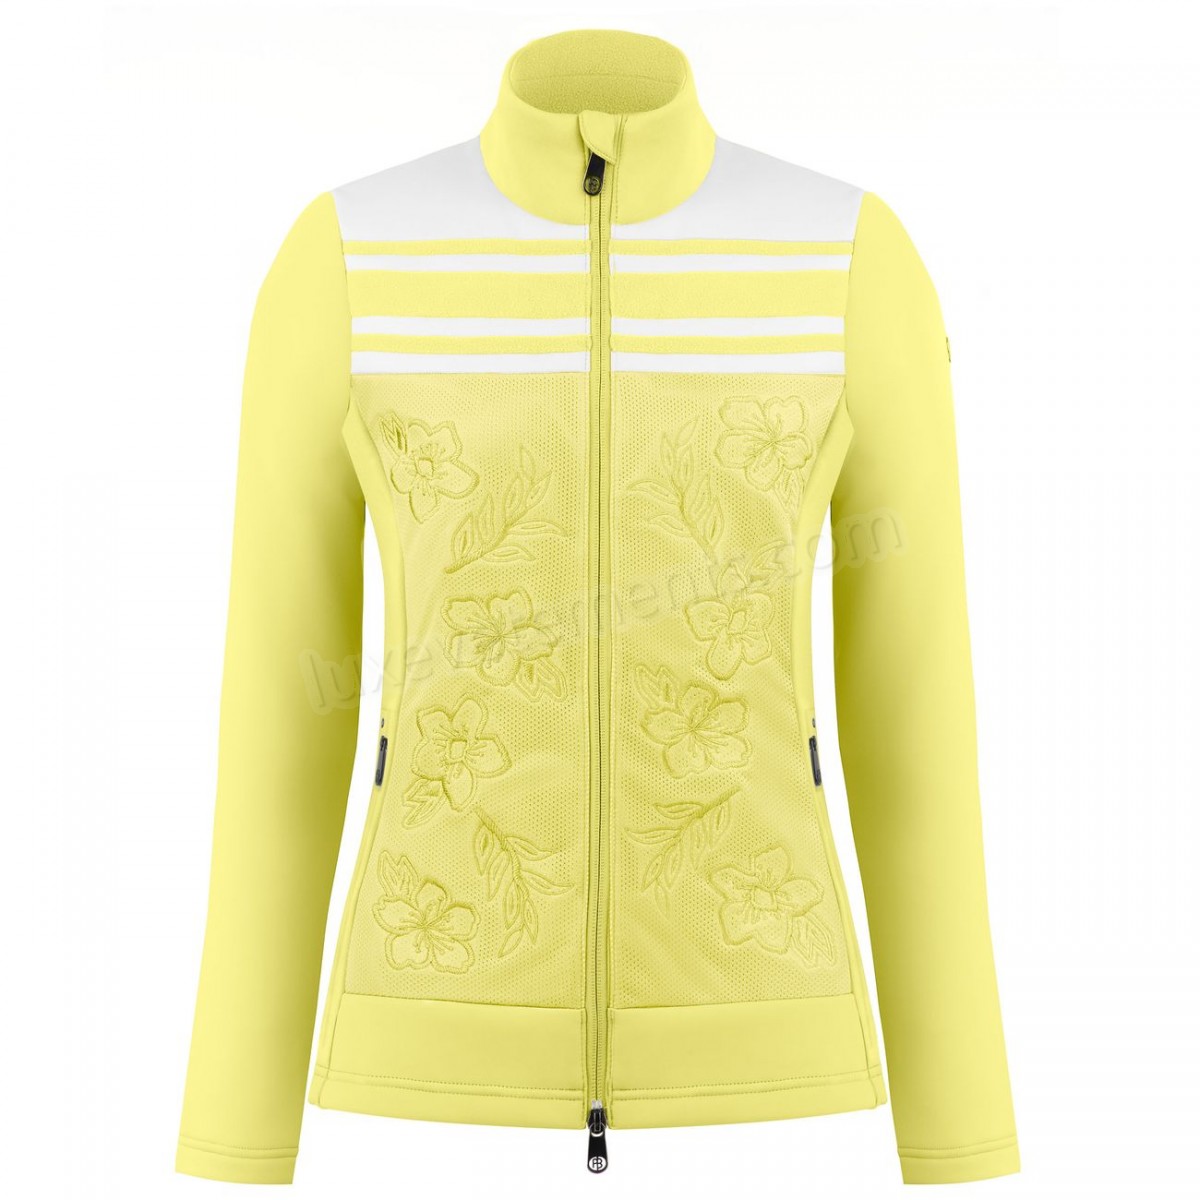 Poivre Blanc-Sports d'hiver femme POIVRE BLANC Veste Polaire Poivre Blanc Hybrid Stretch Fleece Jacket 1605 Multico Yellow Femme Vente en ligne - -0